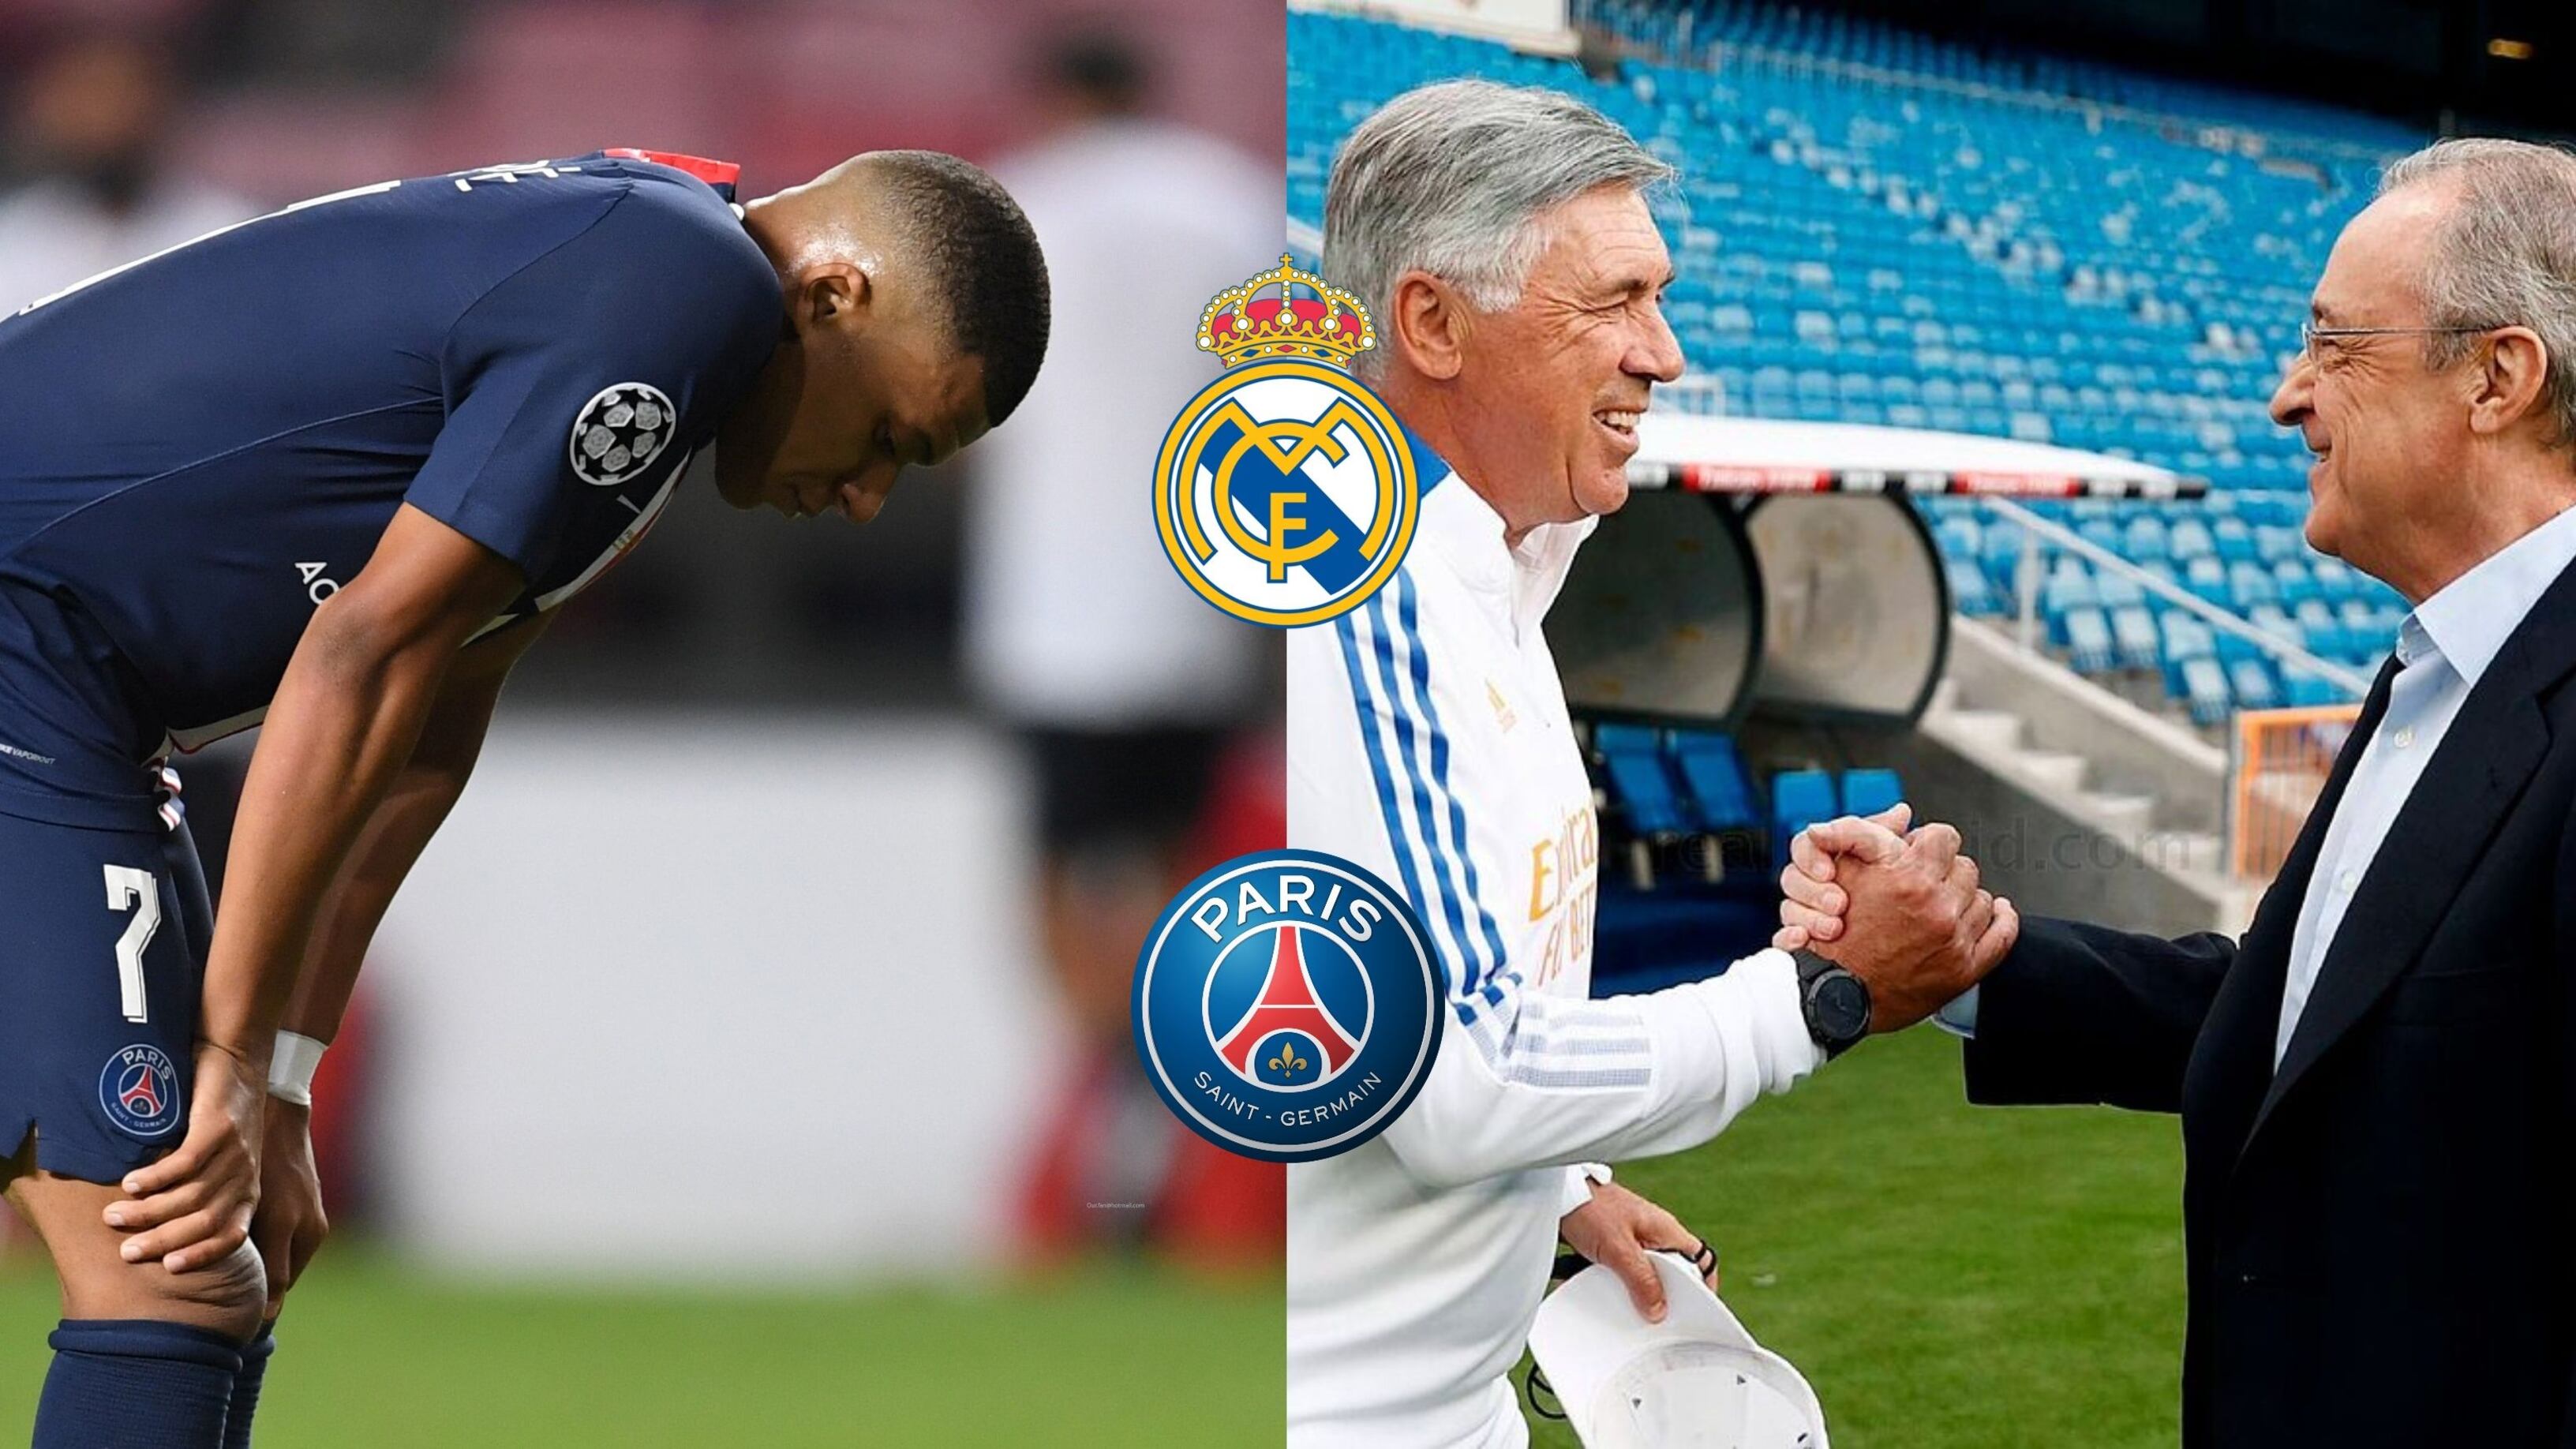 Mbappé los traicionó y ahora Real Madrid planea dar el golpe final que destruya al francés